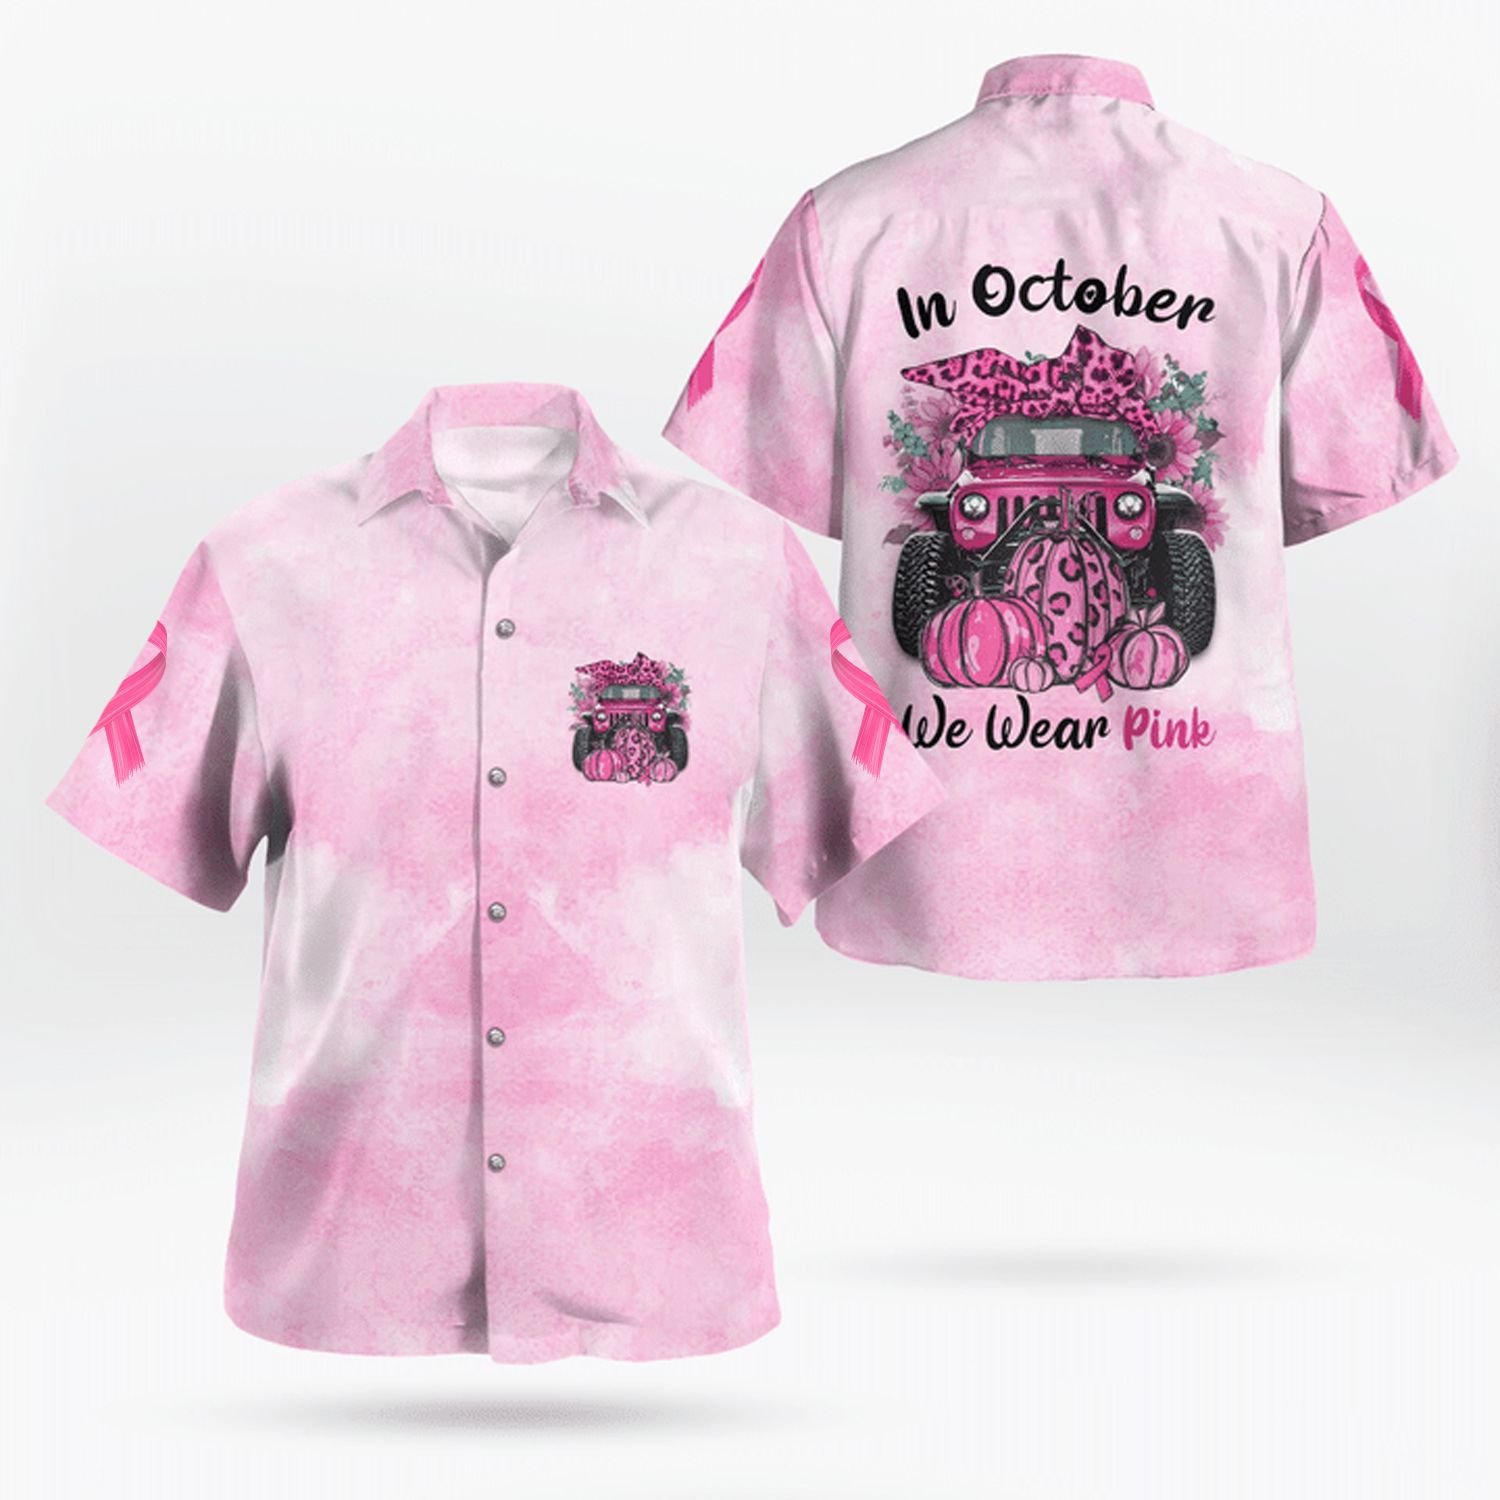 In October we were pink Hawaiian shirt